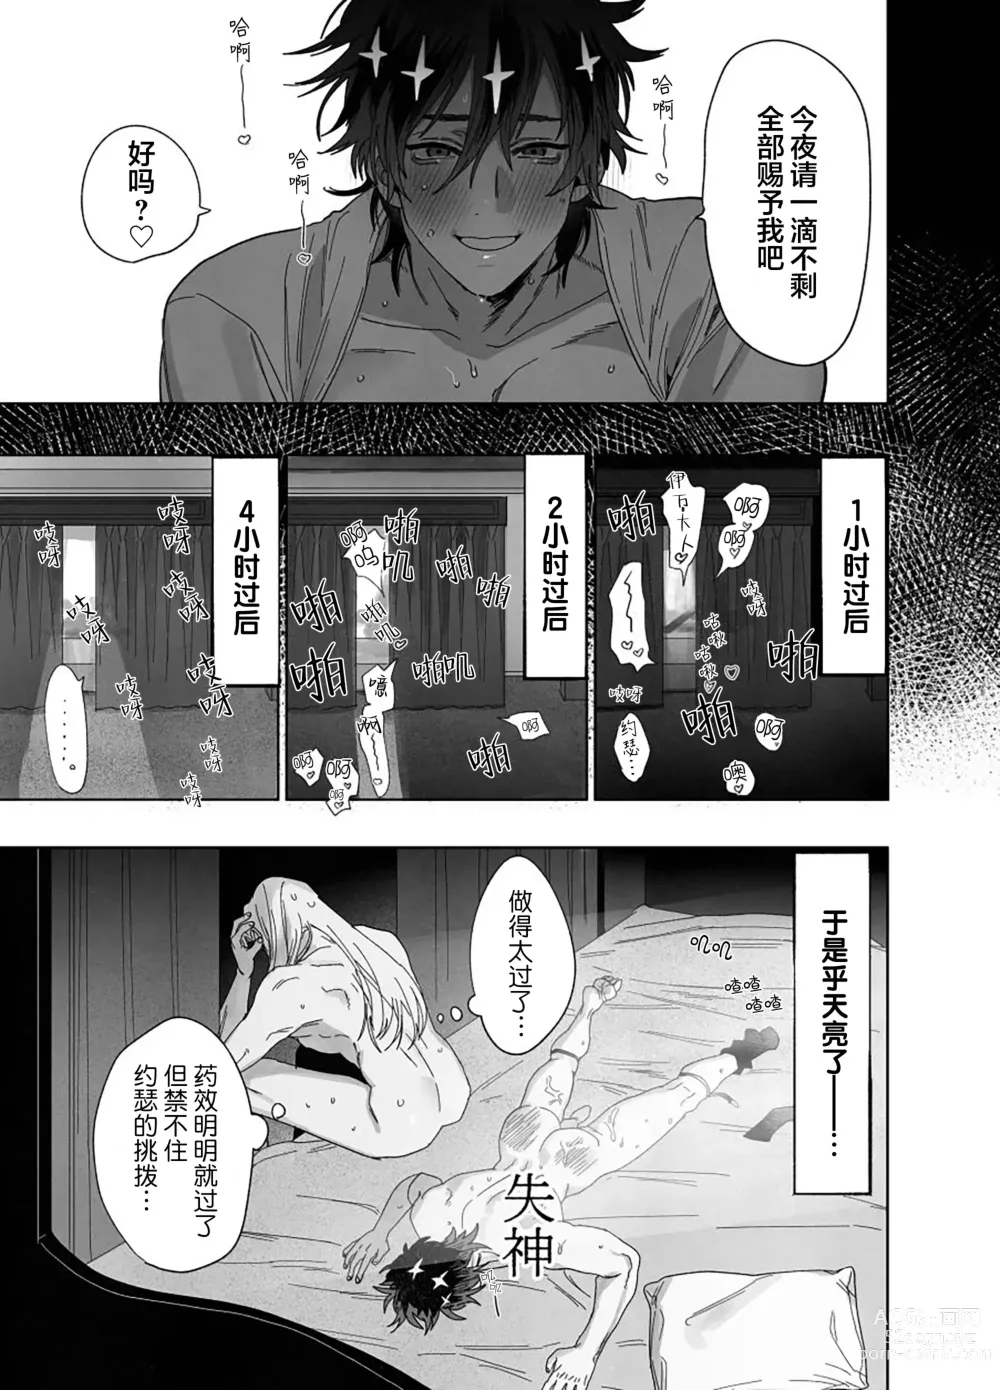 Page 46 of doujinshi Bokushi Kanraku - the pastor surrenders.